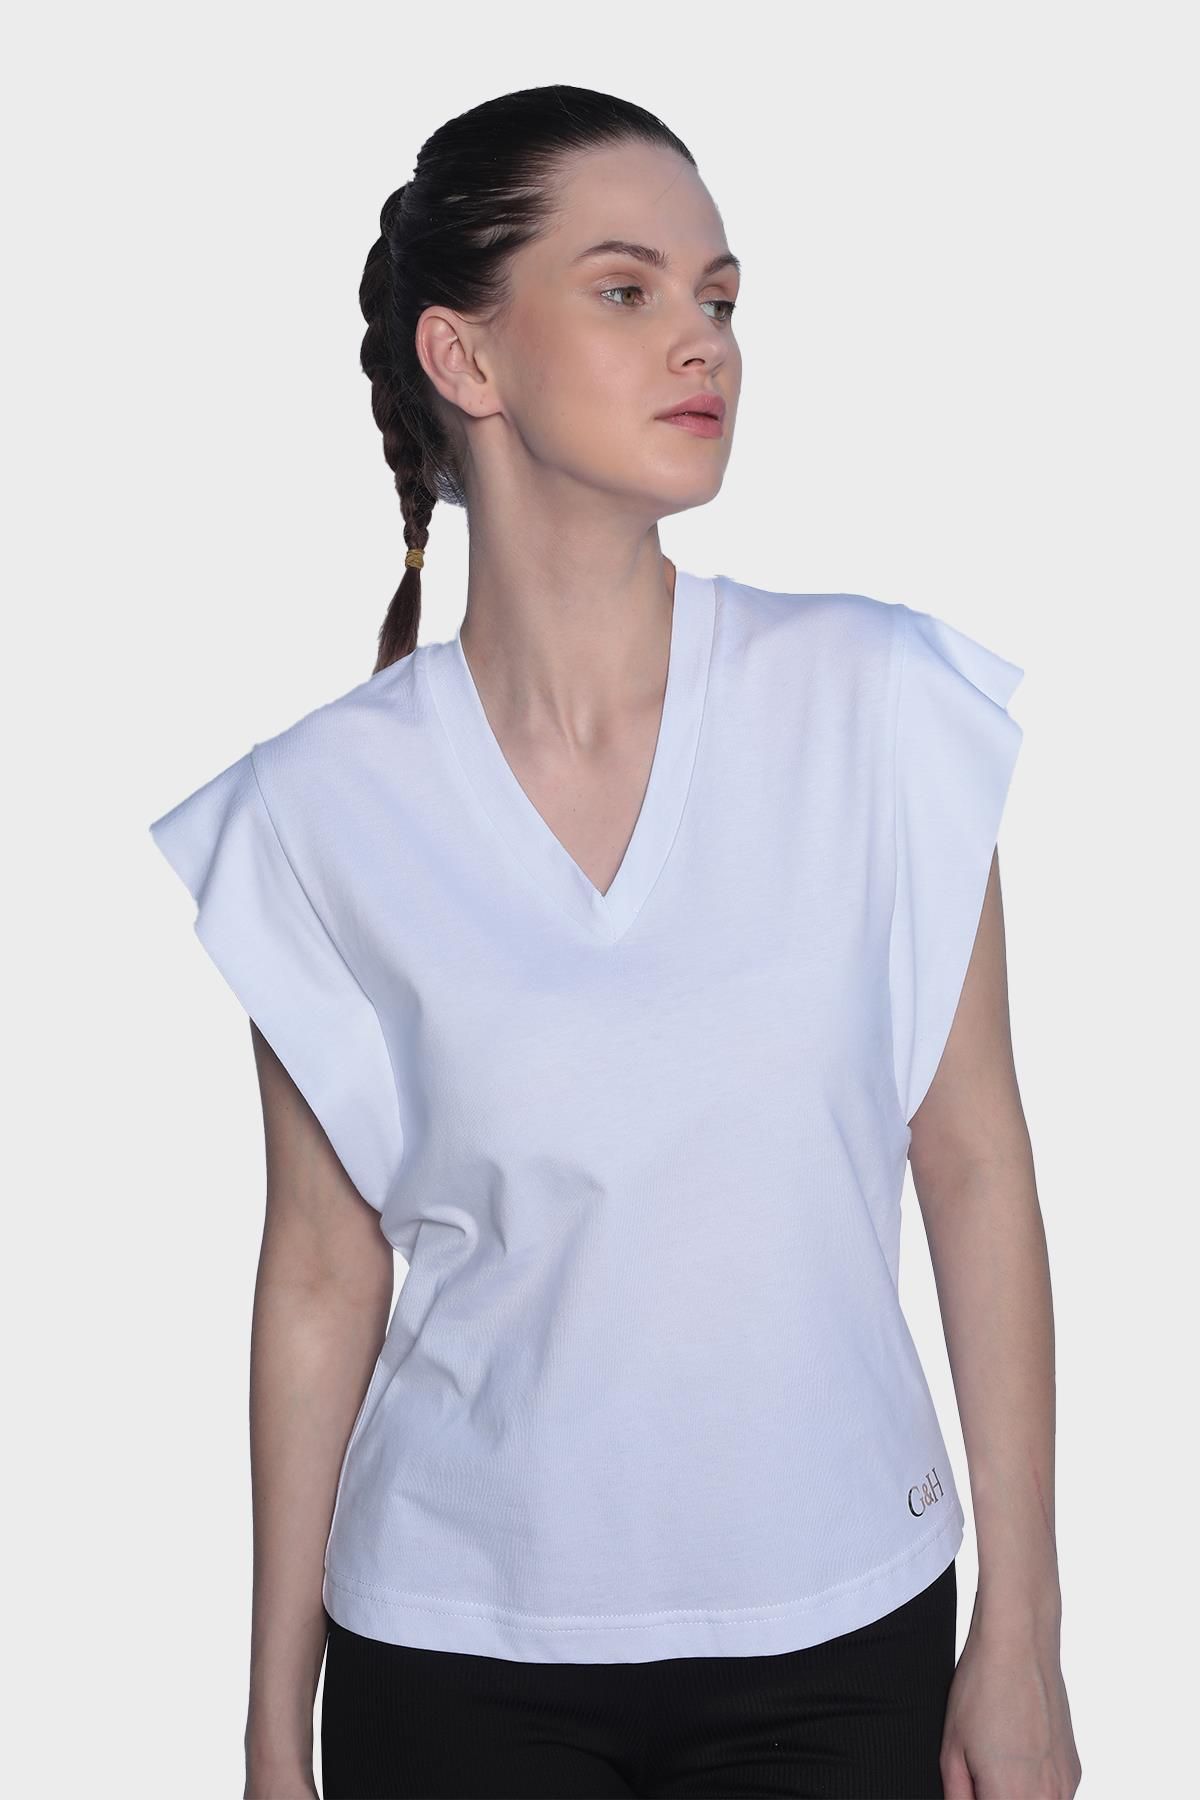 Womens V-Neck Basic Sleeveless T-Shirt - White